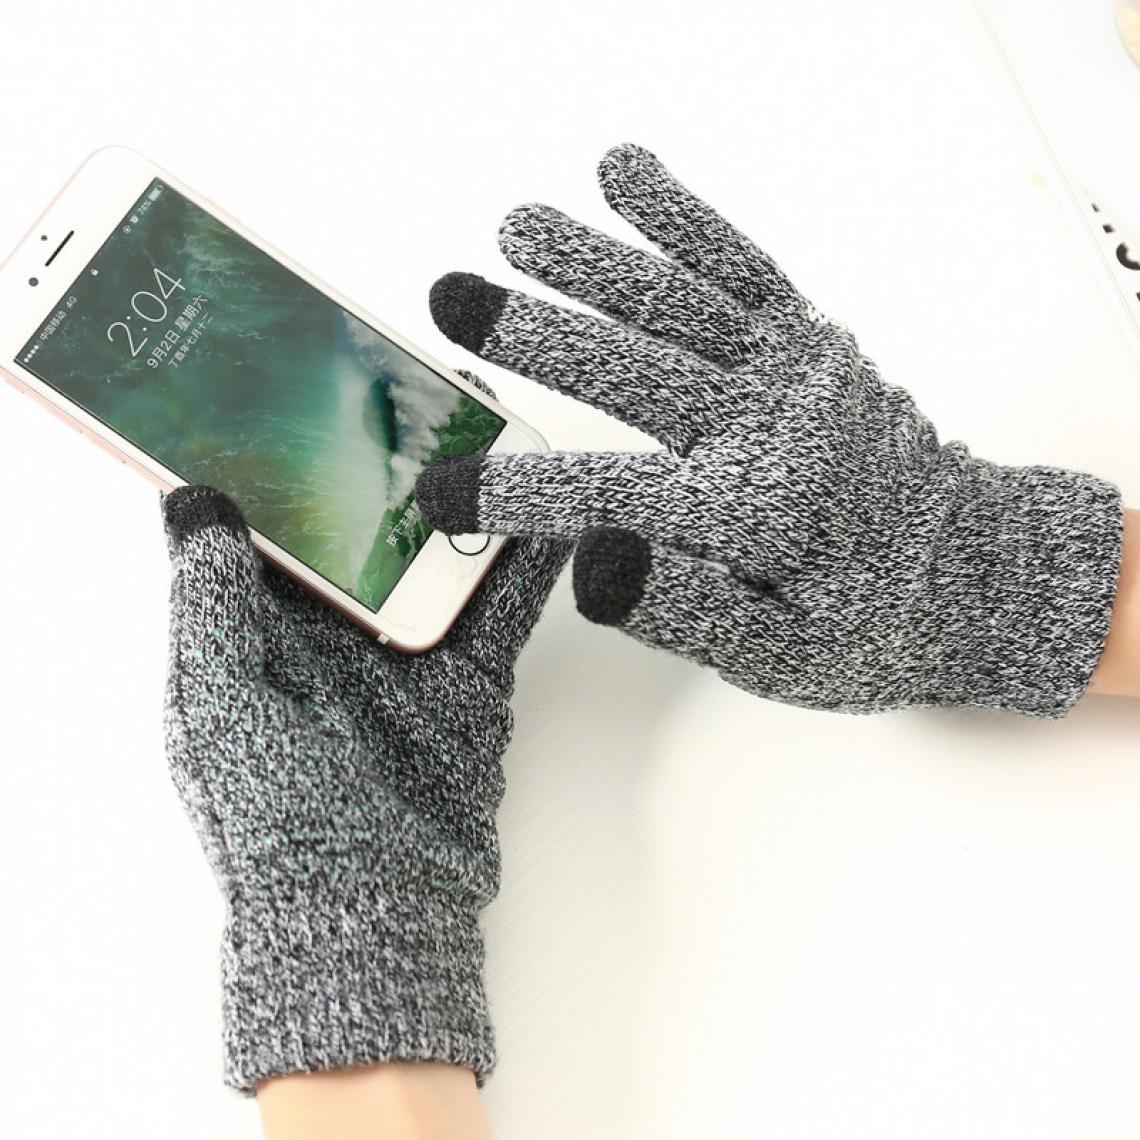 Shot - Gants Homme tactiles pour ONEPLUS 8 Smartphone Taille M 3 doigts Hiver (GRIS) - Autres accessoires smartphone